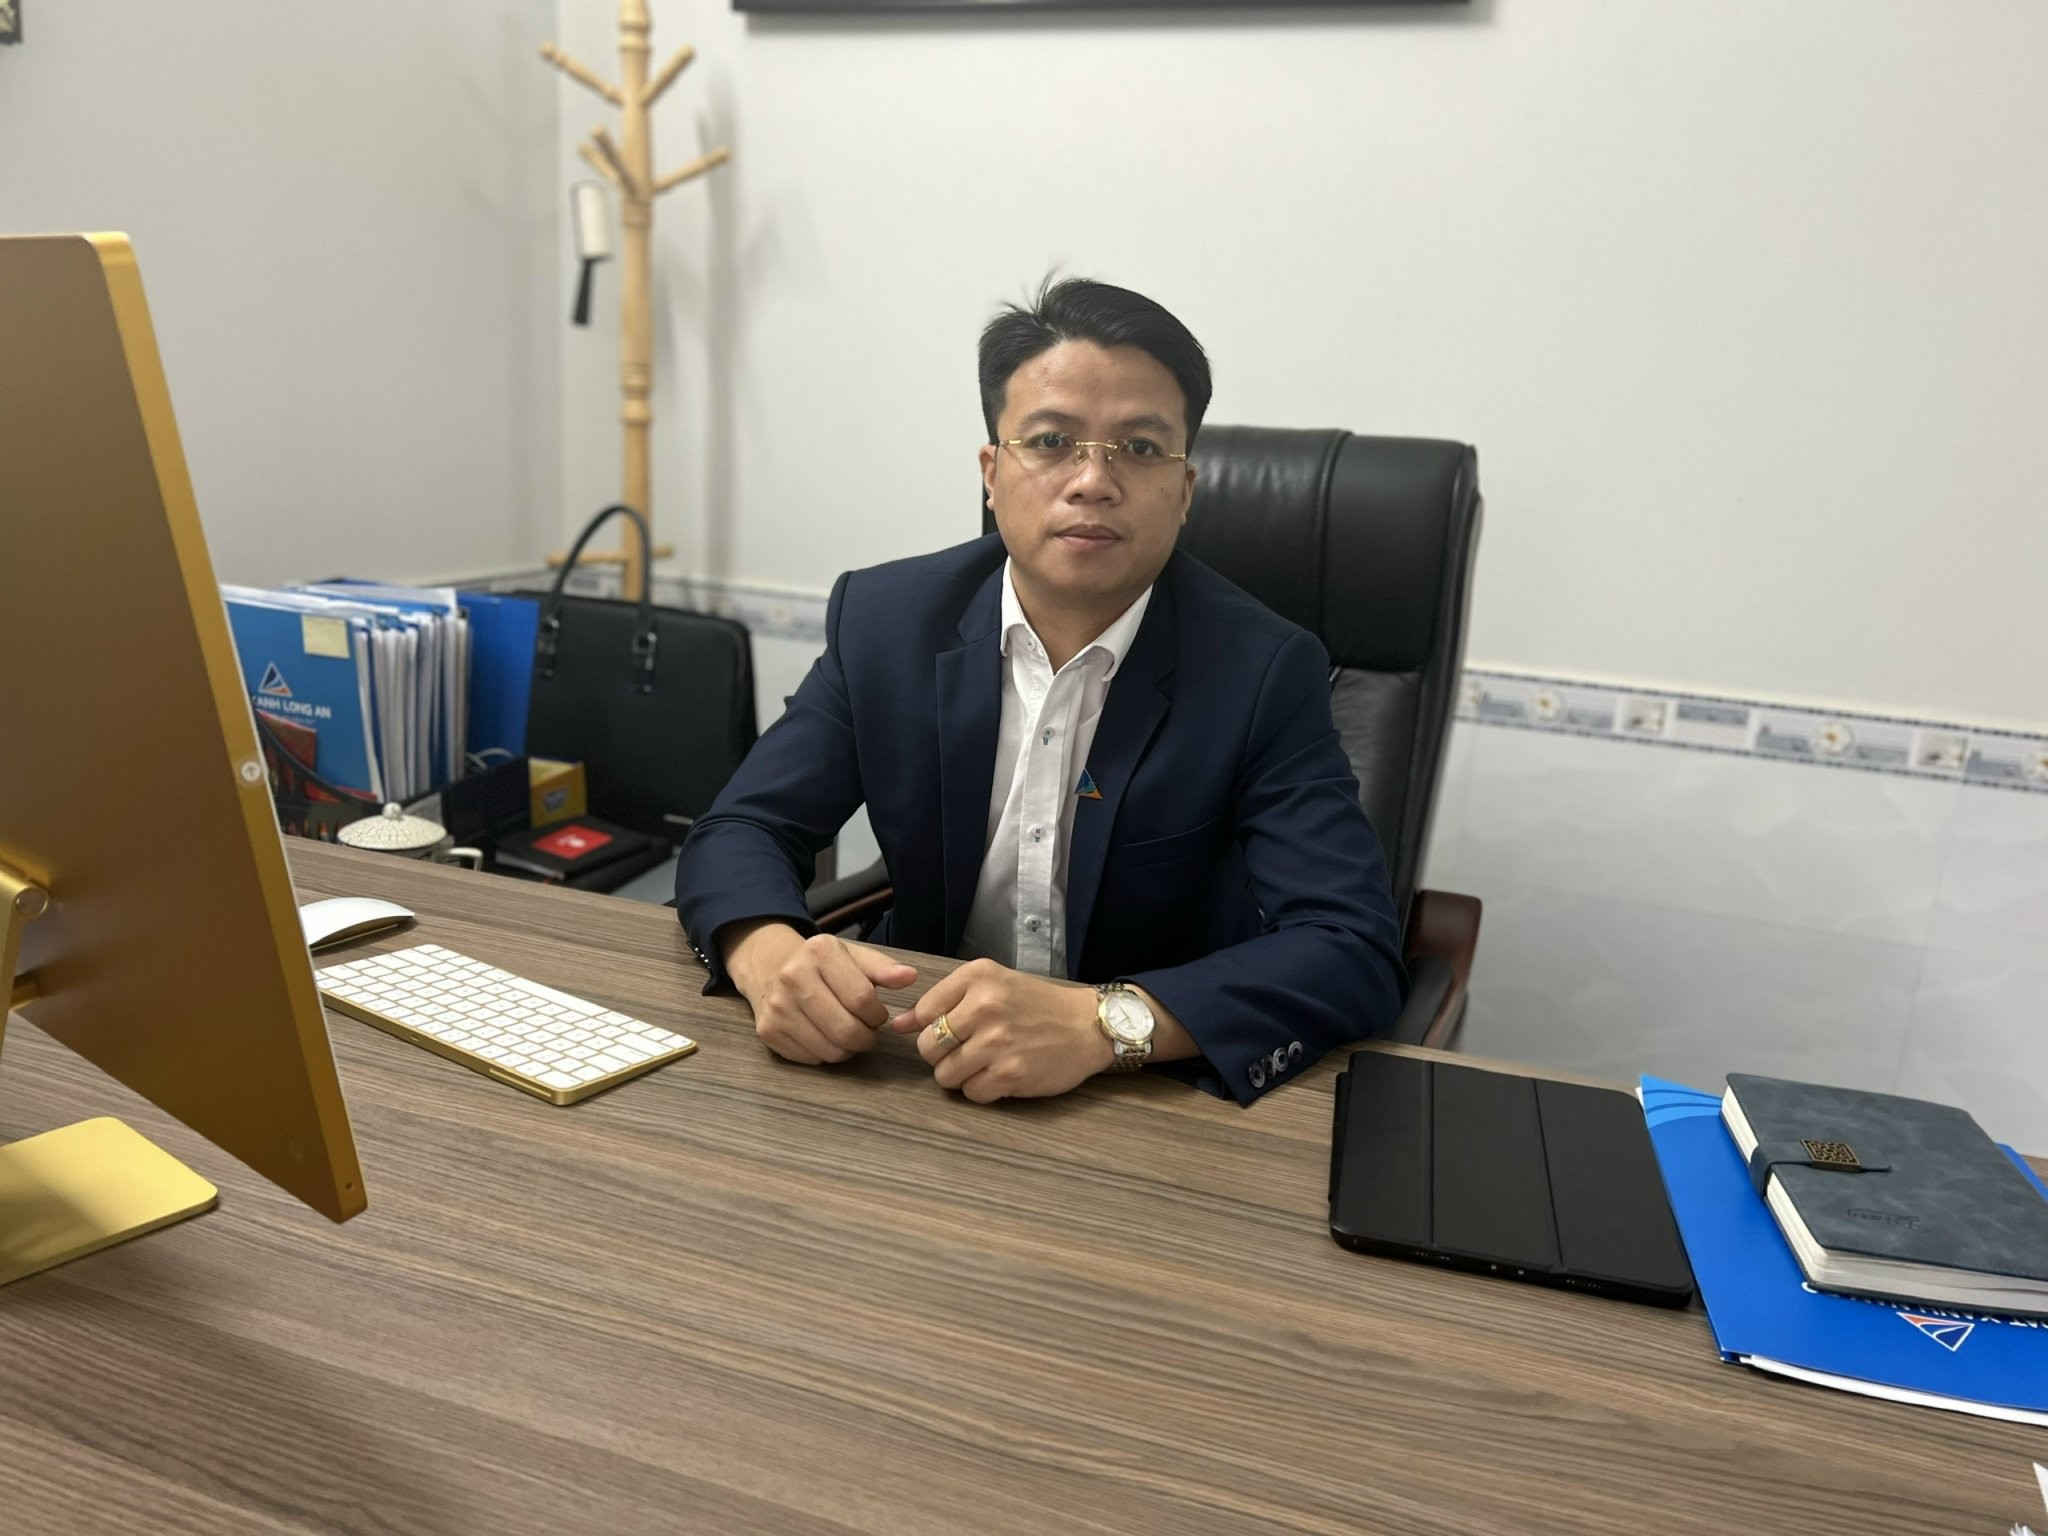 
Ông Phạm Văn Hảo – CEO Nam Bộ Invest
